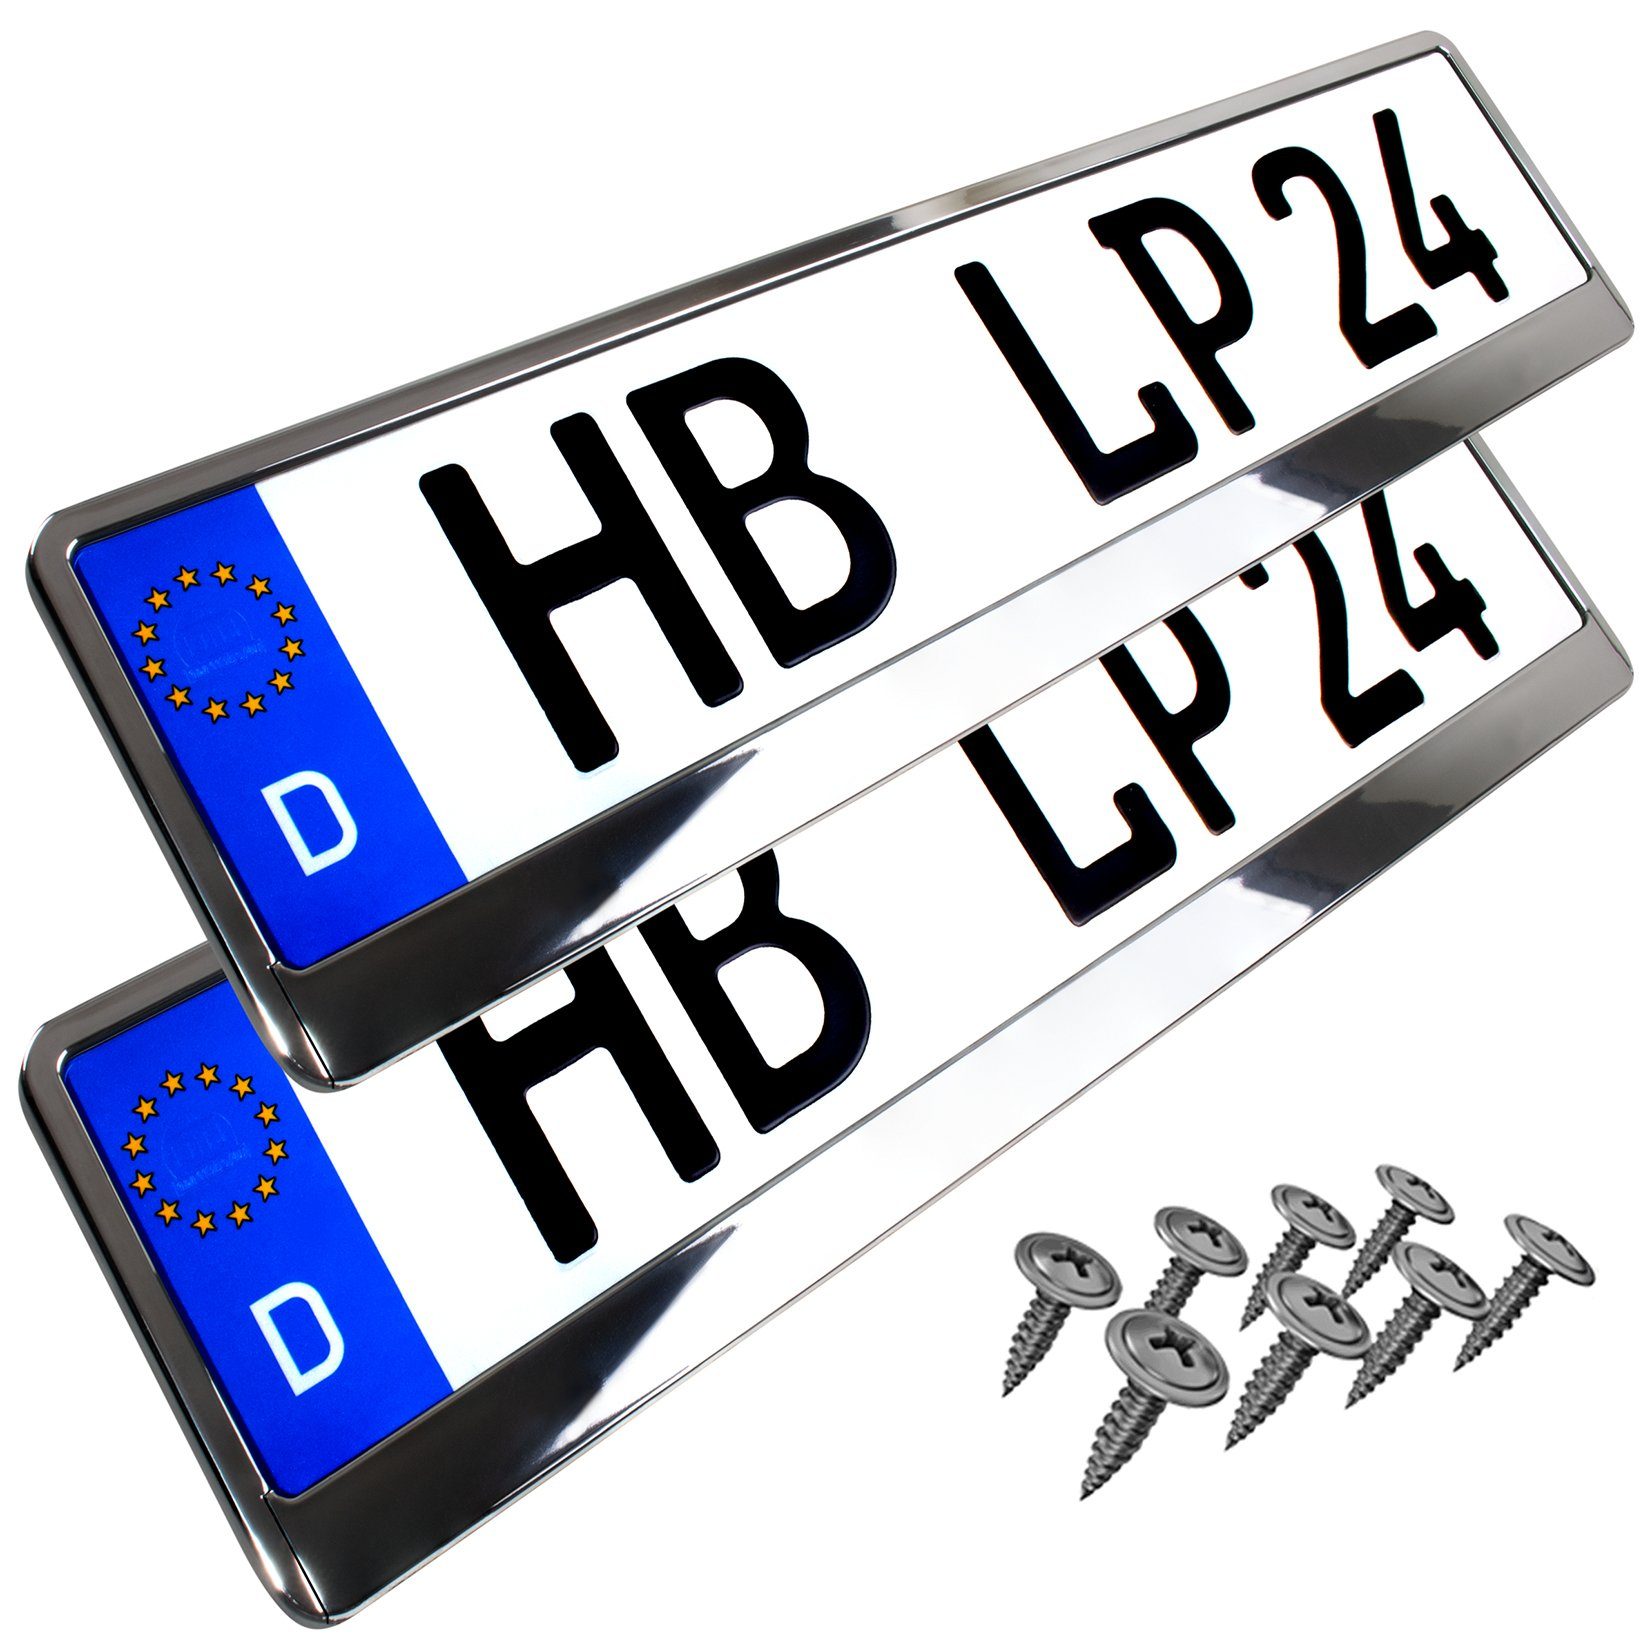 L & P Car Design Kennzeichenhalter für Auto in Chrom-Optik Kennzeichenhalterung Kennzeichen, (2 Stück)